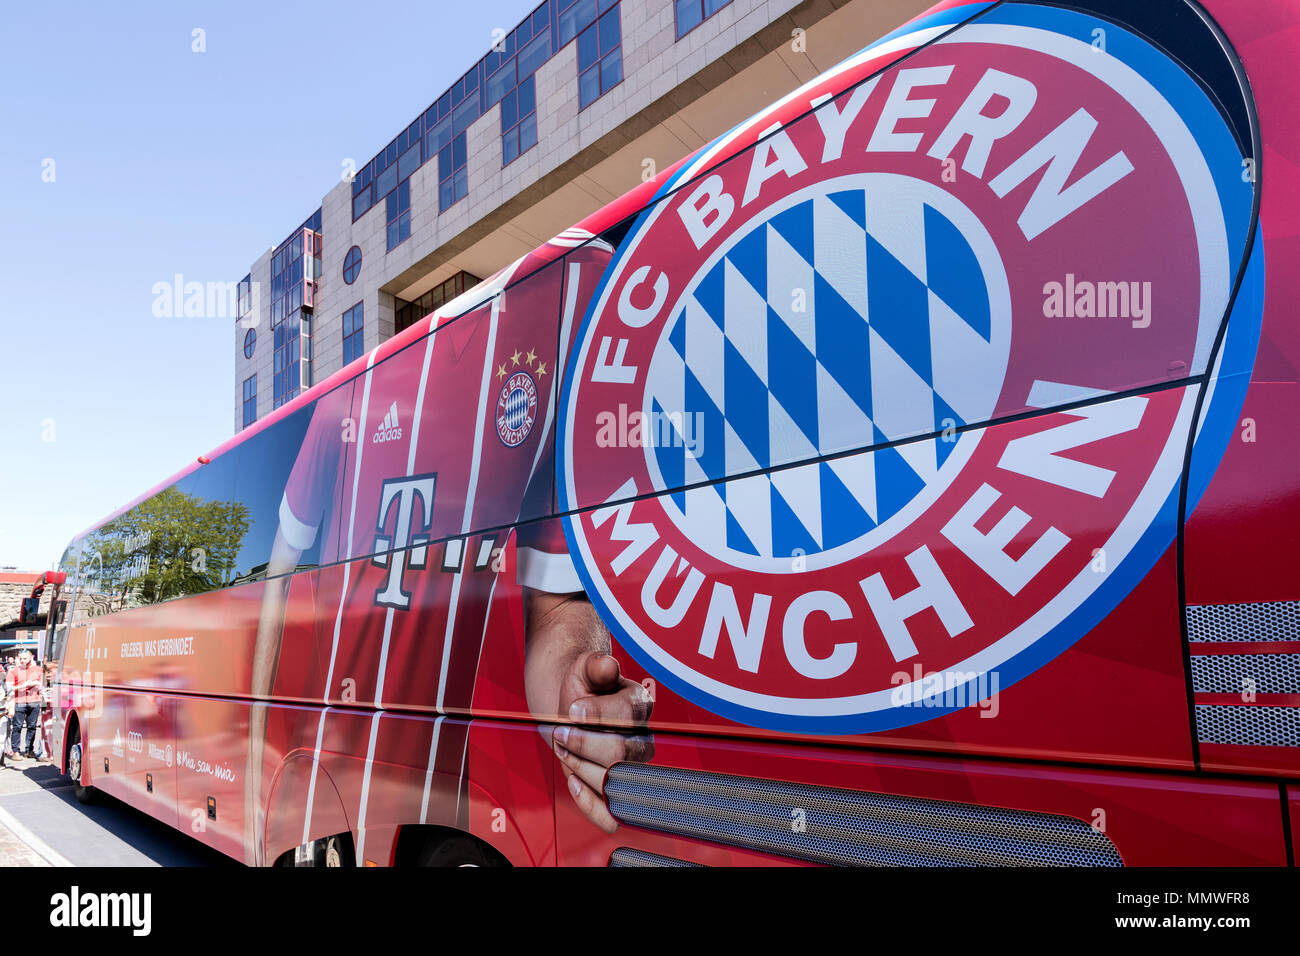 Team-Bus des FC Bayern München Fußball-Abteilung. Der FC Bayern der erfolgreichste Verein in der deutschen Fußball-Geschichte. Stockfoto